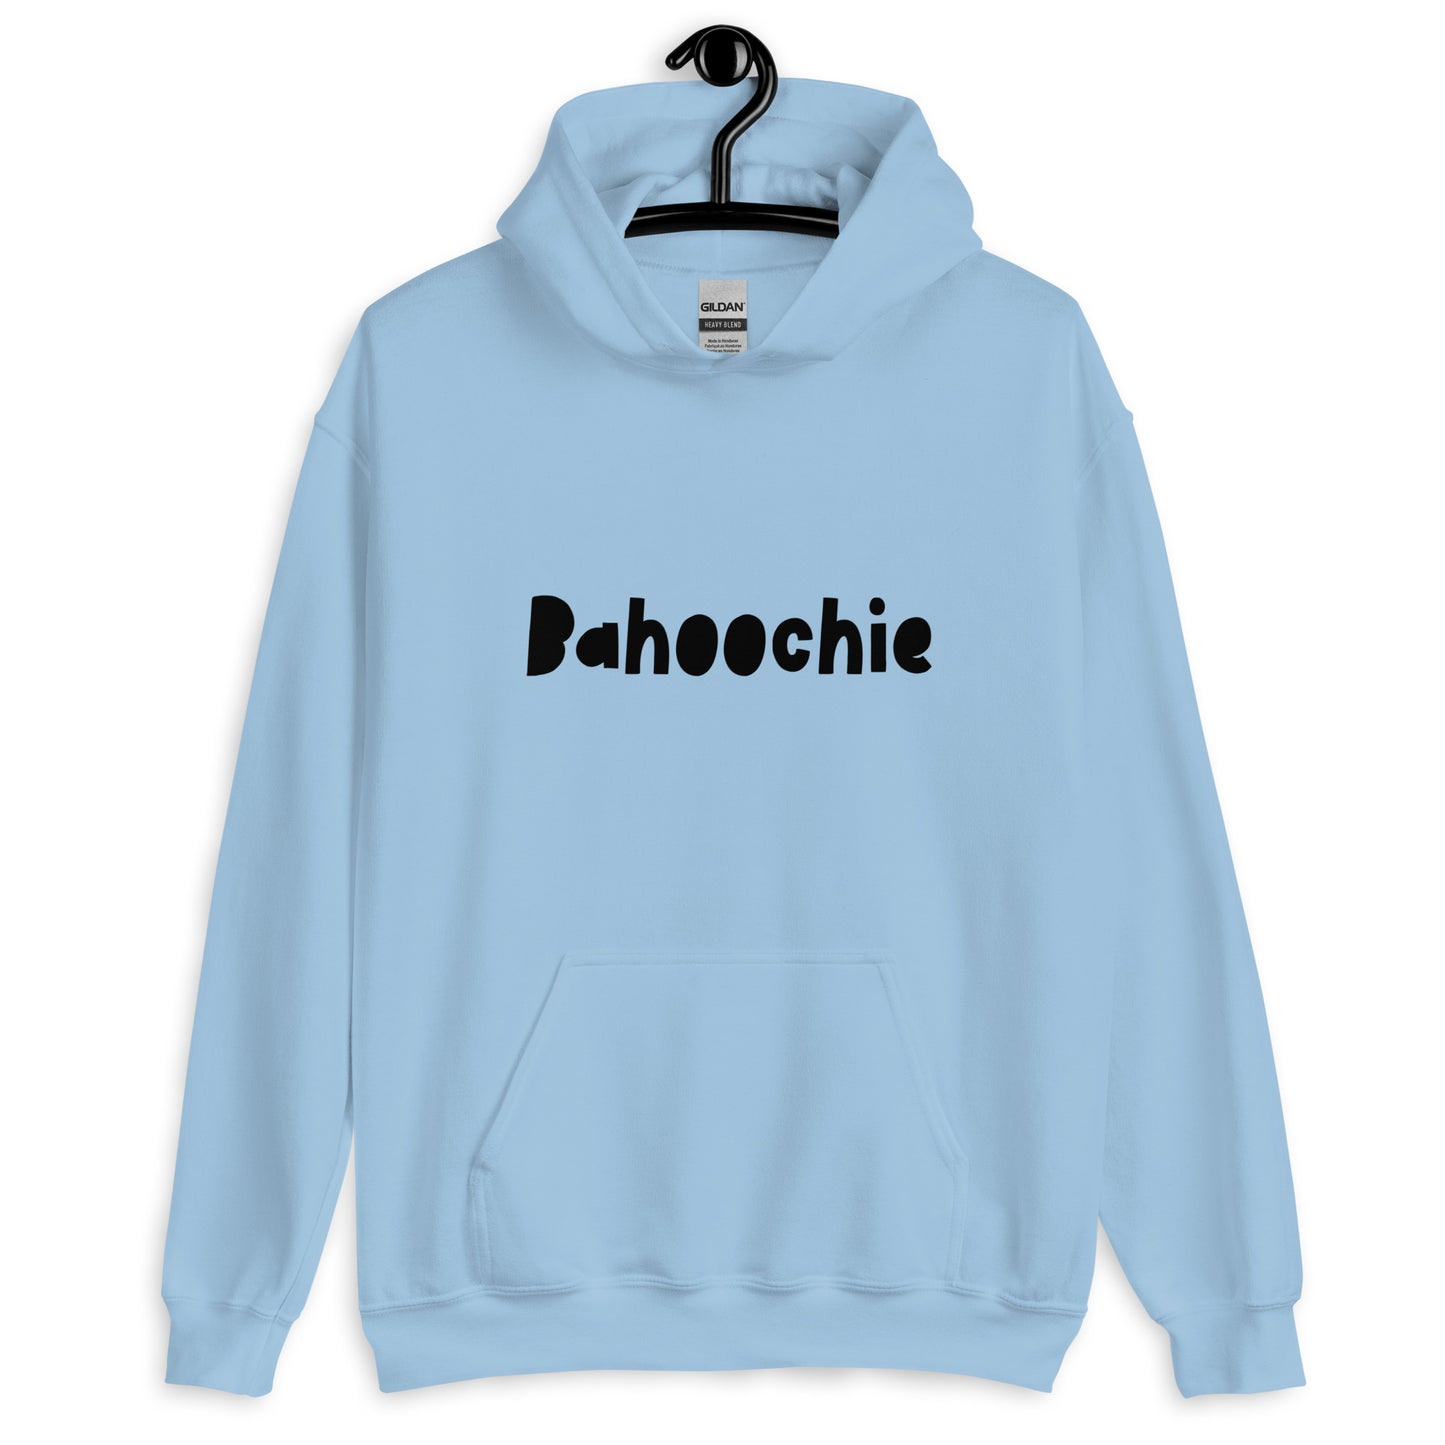 'Bahoochie' Scots Slang Unisex Hoodie